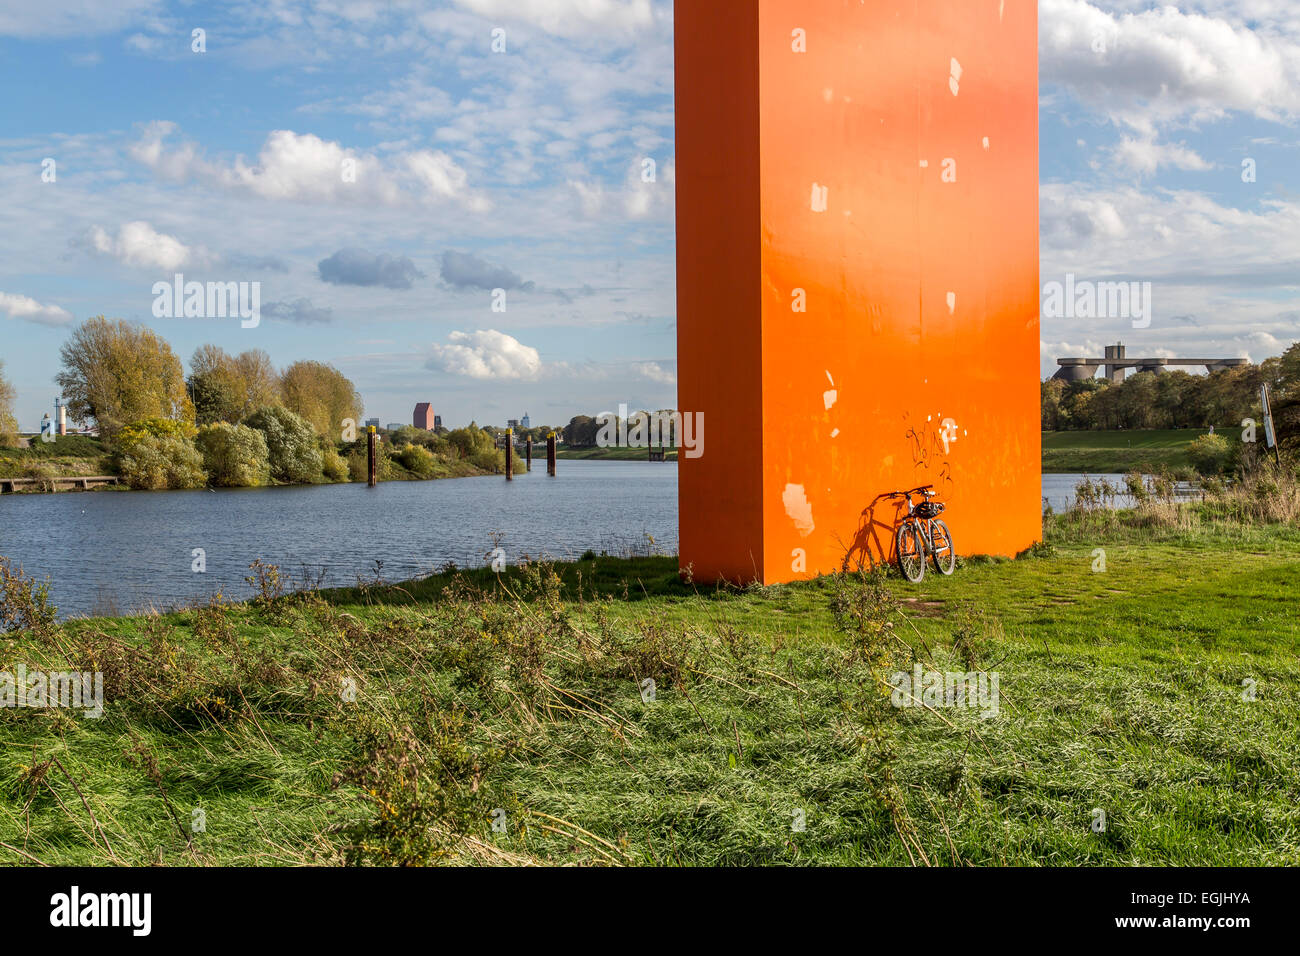 Gita in bicicletta lungo il fiume Ruhr, il 'Ruhrtalradweg' - Ruhr Valley Trail, dalla primavera all'estuario, 230 chilometri di lunghezza, Foto Stock